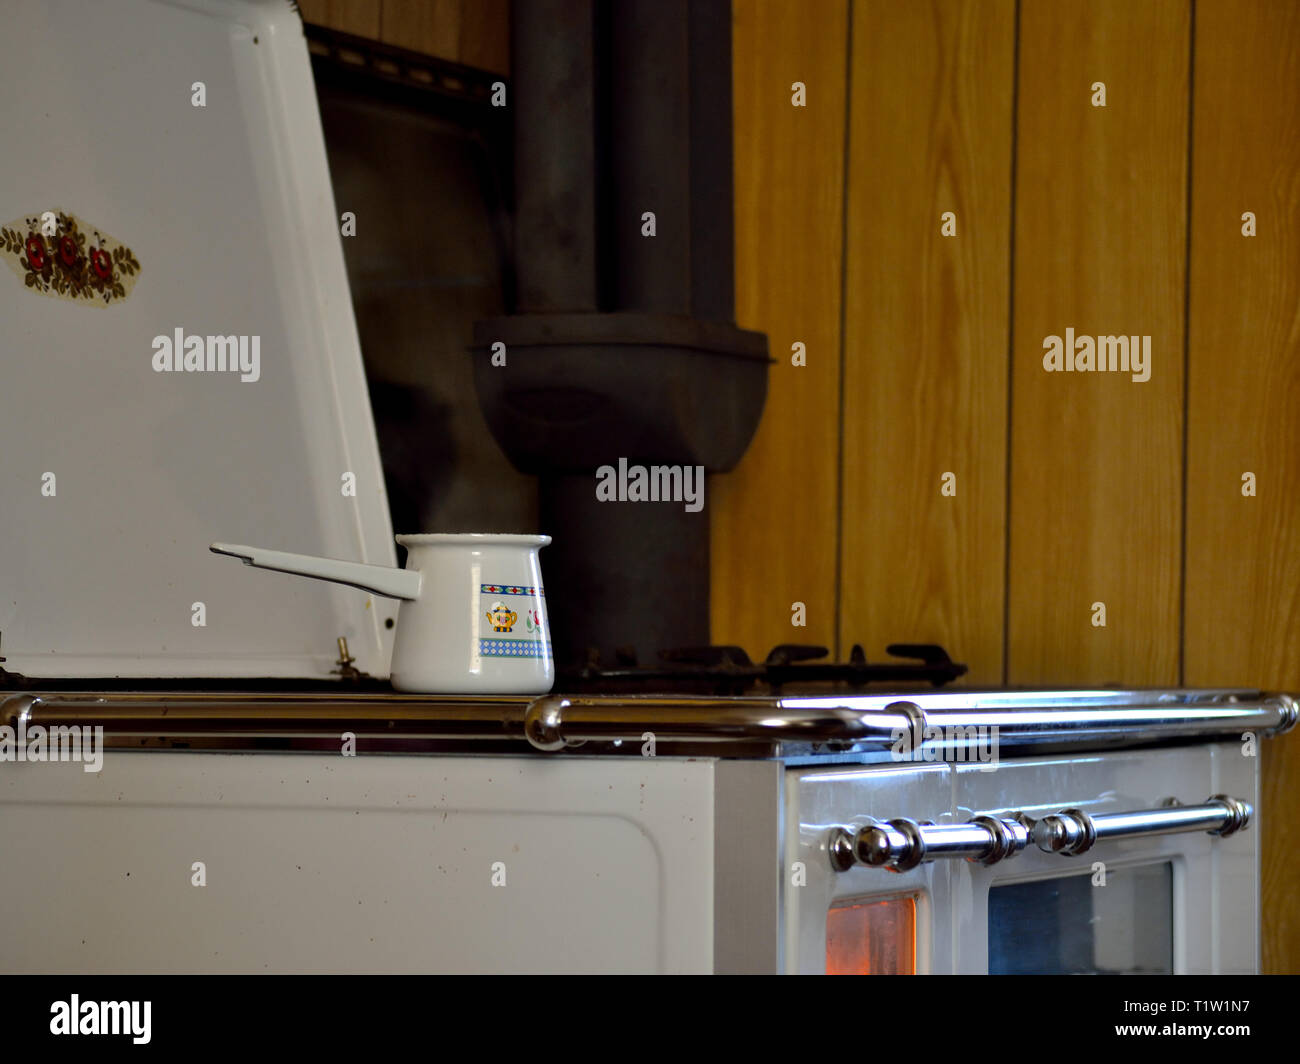 Wirtschaftliche Holzofen für Kochen, Backen und Heizung. Weiß Holzofen in  der Küche eines Hauses mit einem türkischen Kaffee Topf auf dem Feuer  Stockfotografie - Alamy